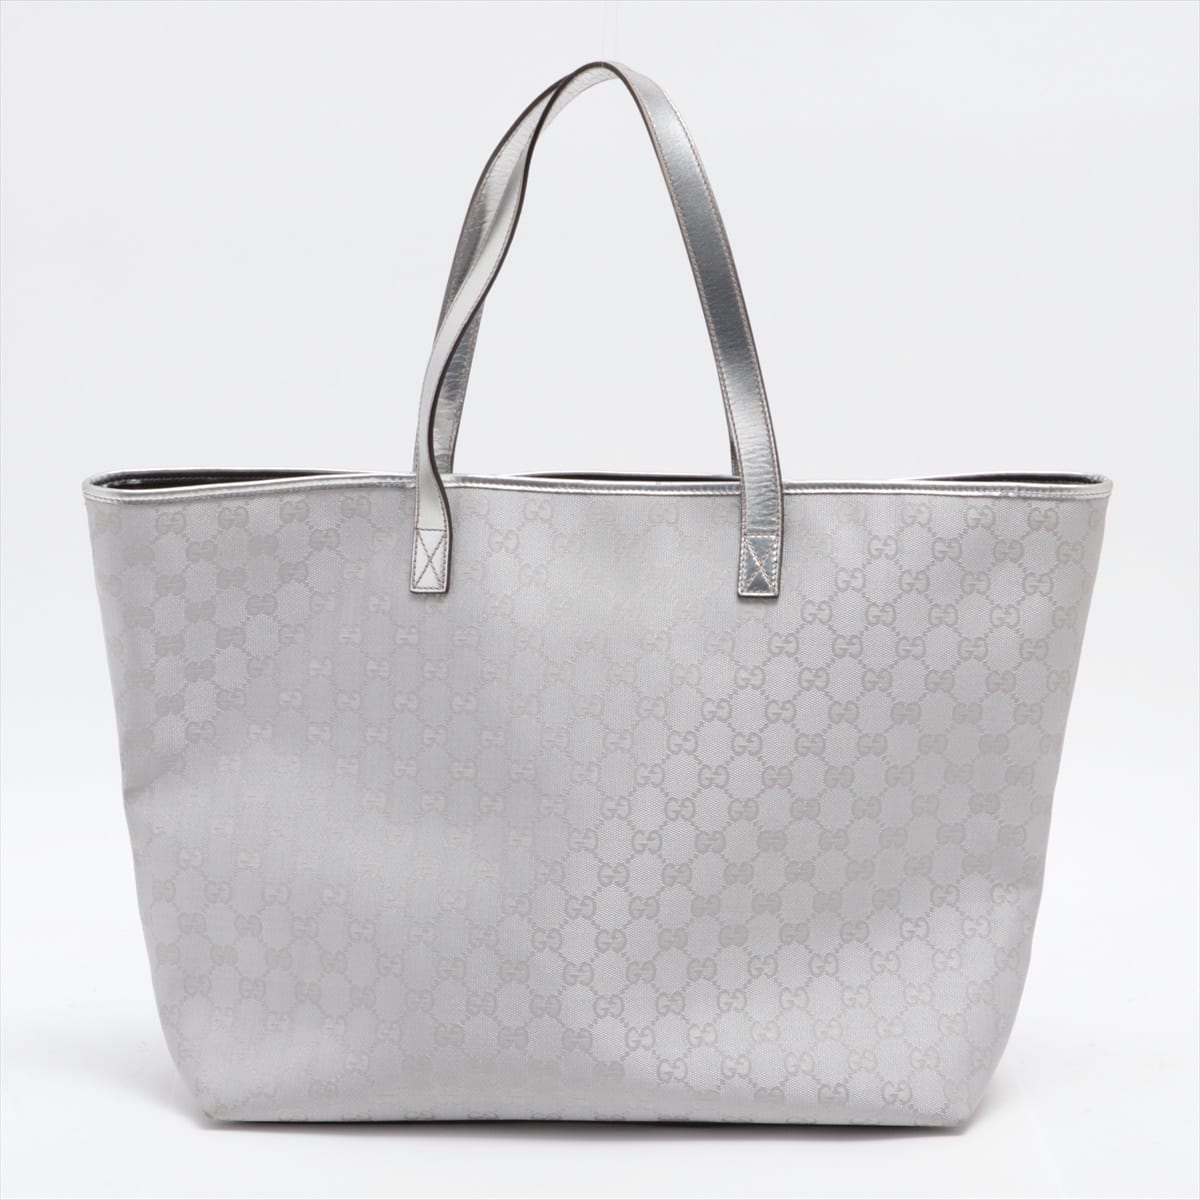 Gucci GG Canvas Canvas & leather Tote bag Silver 257245